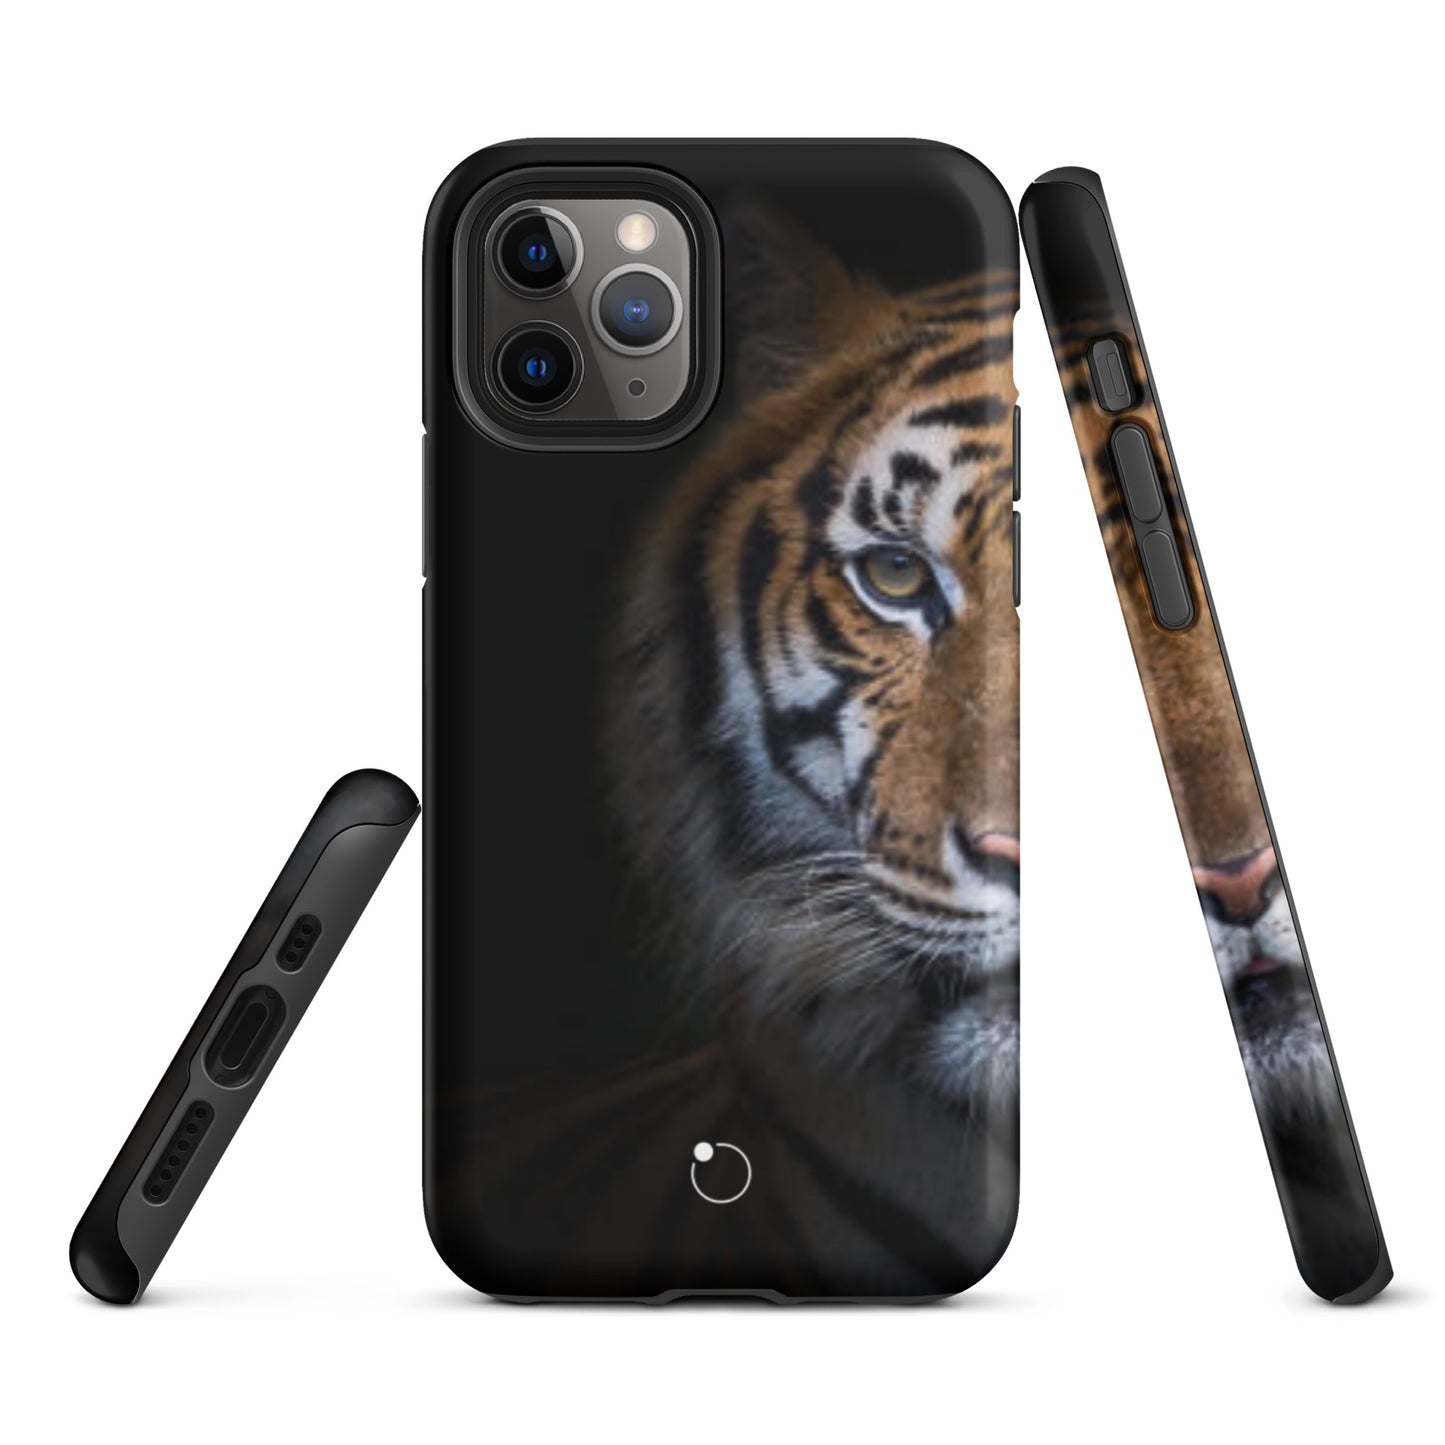 iCase Tiger HardCase étui pour téléphone portable pour iPhone